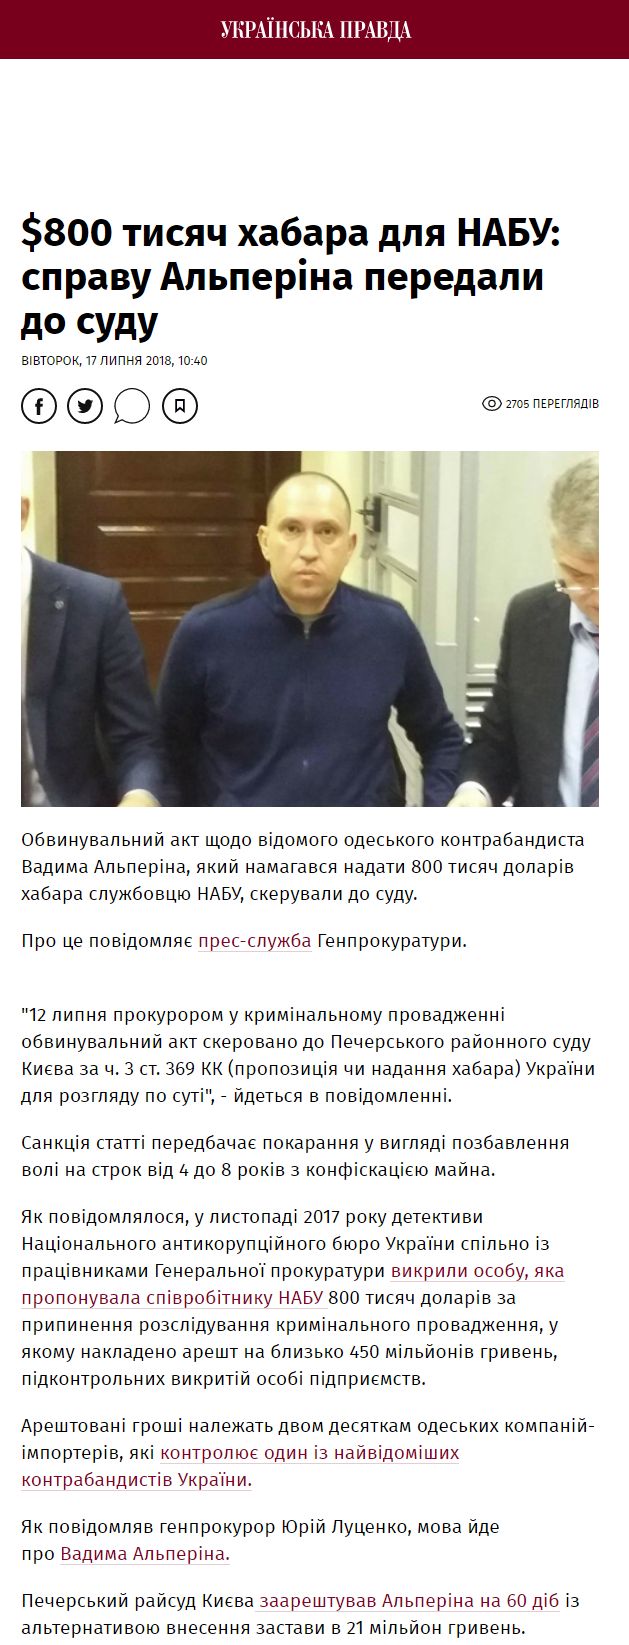 https://www.pravda.com.ua/news/2018/07/17/7186558/